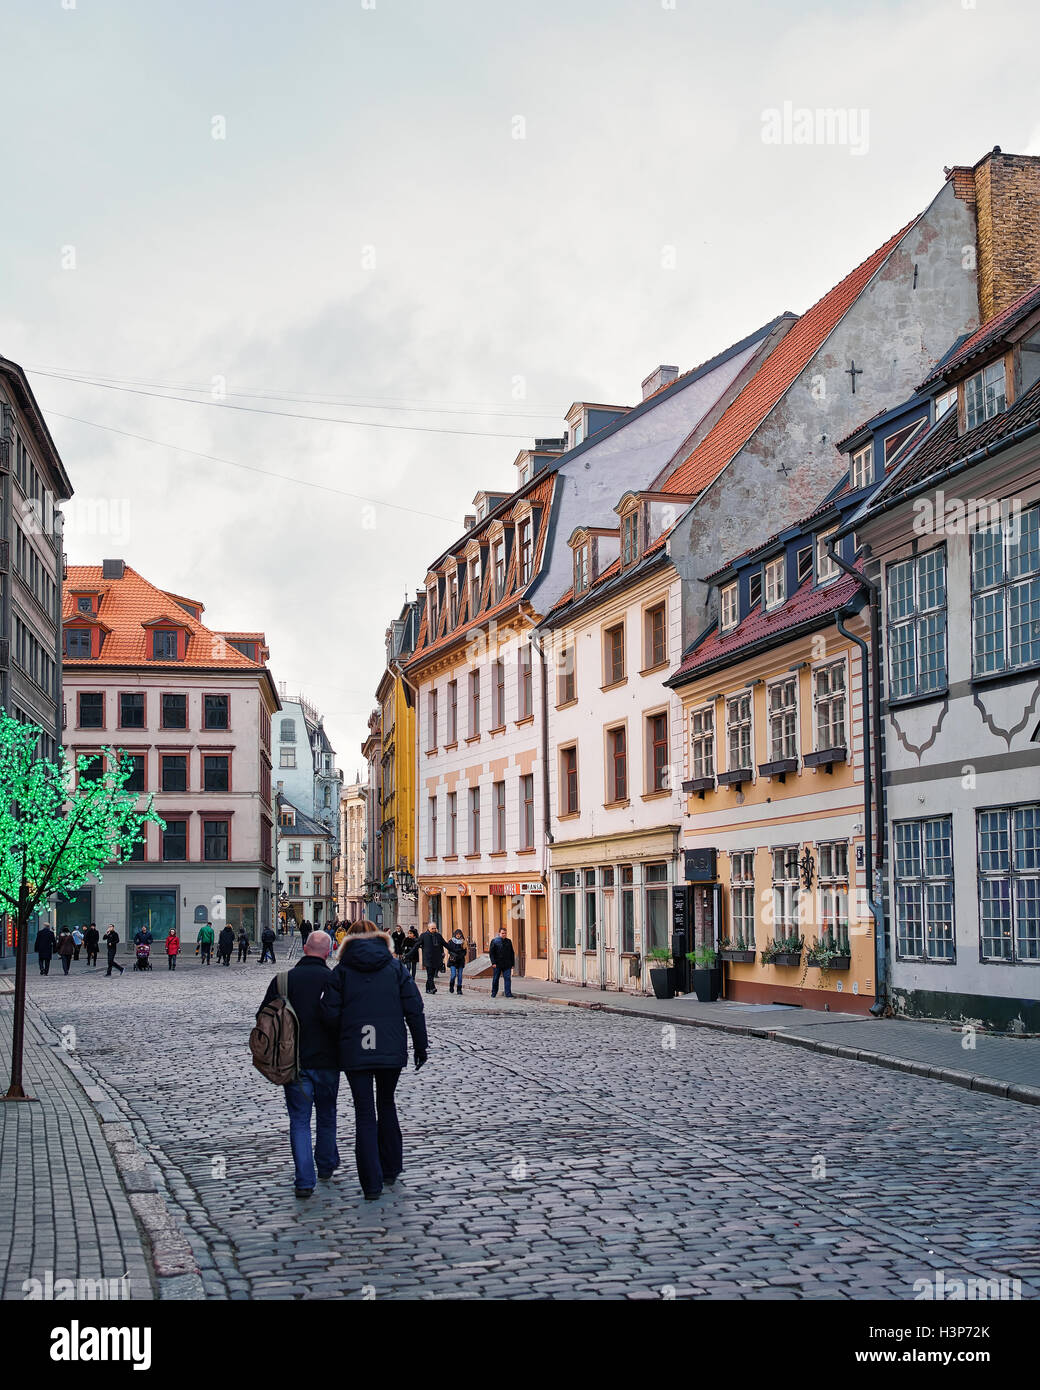 Riga, Lettland - 26. Dezember 2015: Menschen auf der Straße in der Altstadt von Riga, Hauptstadt Lettlands, an Weihnachten. Kein Schnee, kein Wind, nur Sonne. Stockfoto